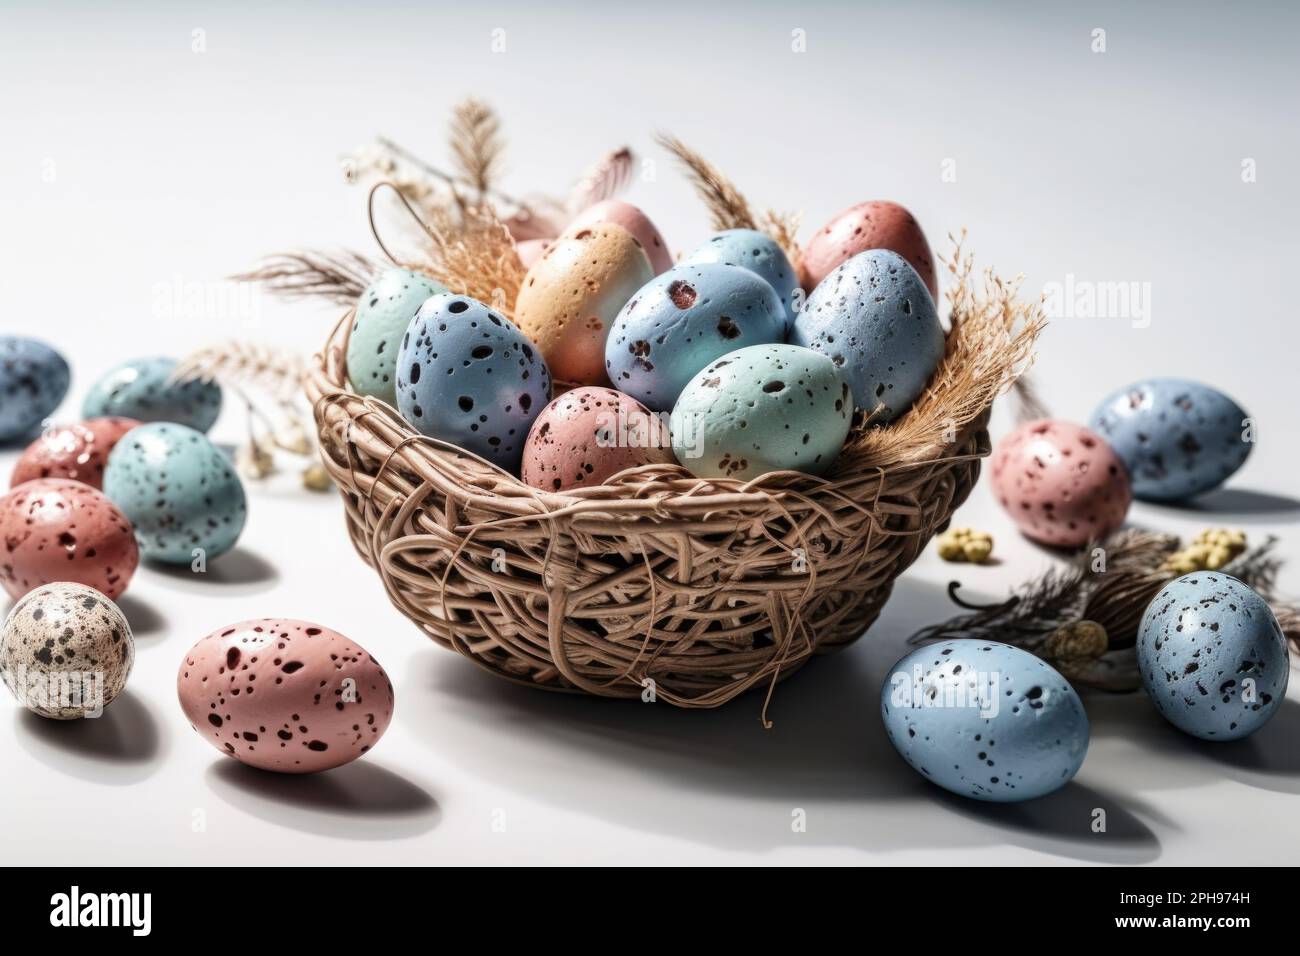 Rehaussez votre décor de Pâques avec un panier élégant rempli d'œufs colorés. Banque D'Images